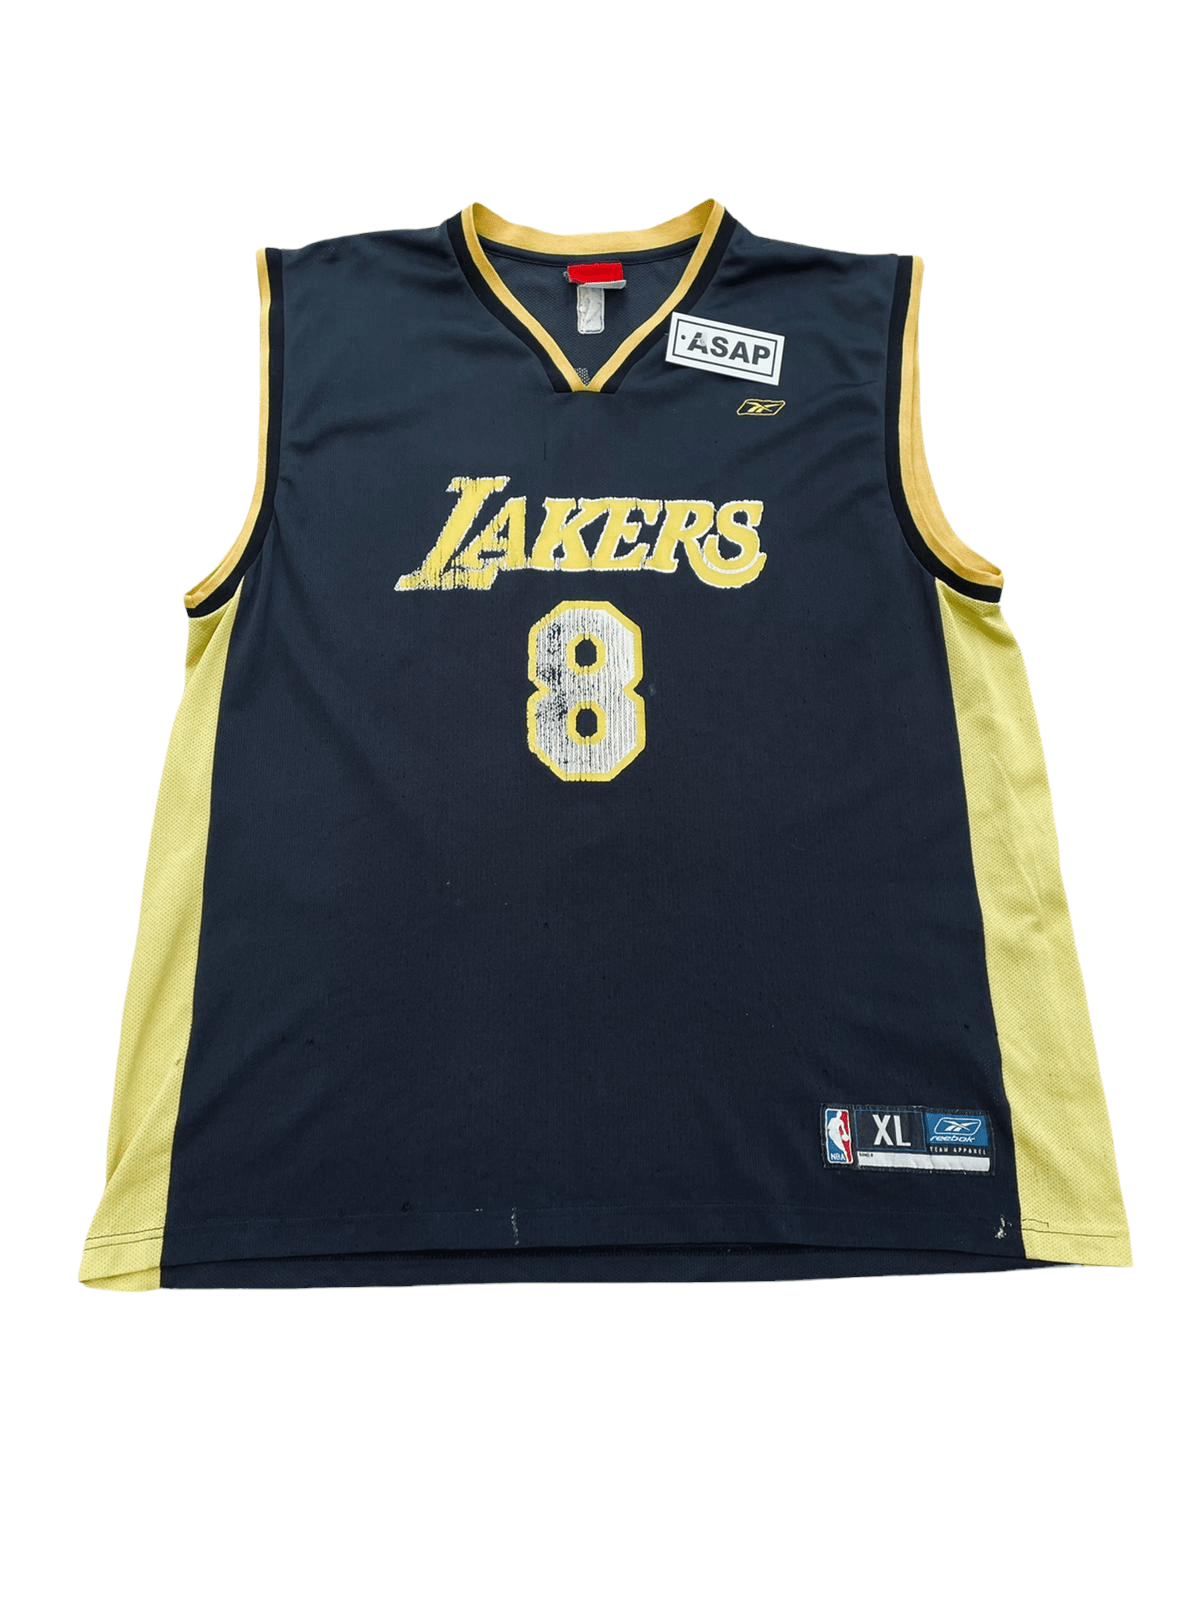 Vintage Reebok LA Lakers Kobe Bryant Jersey - XL